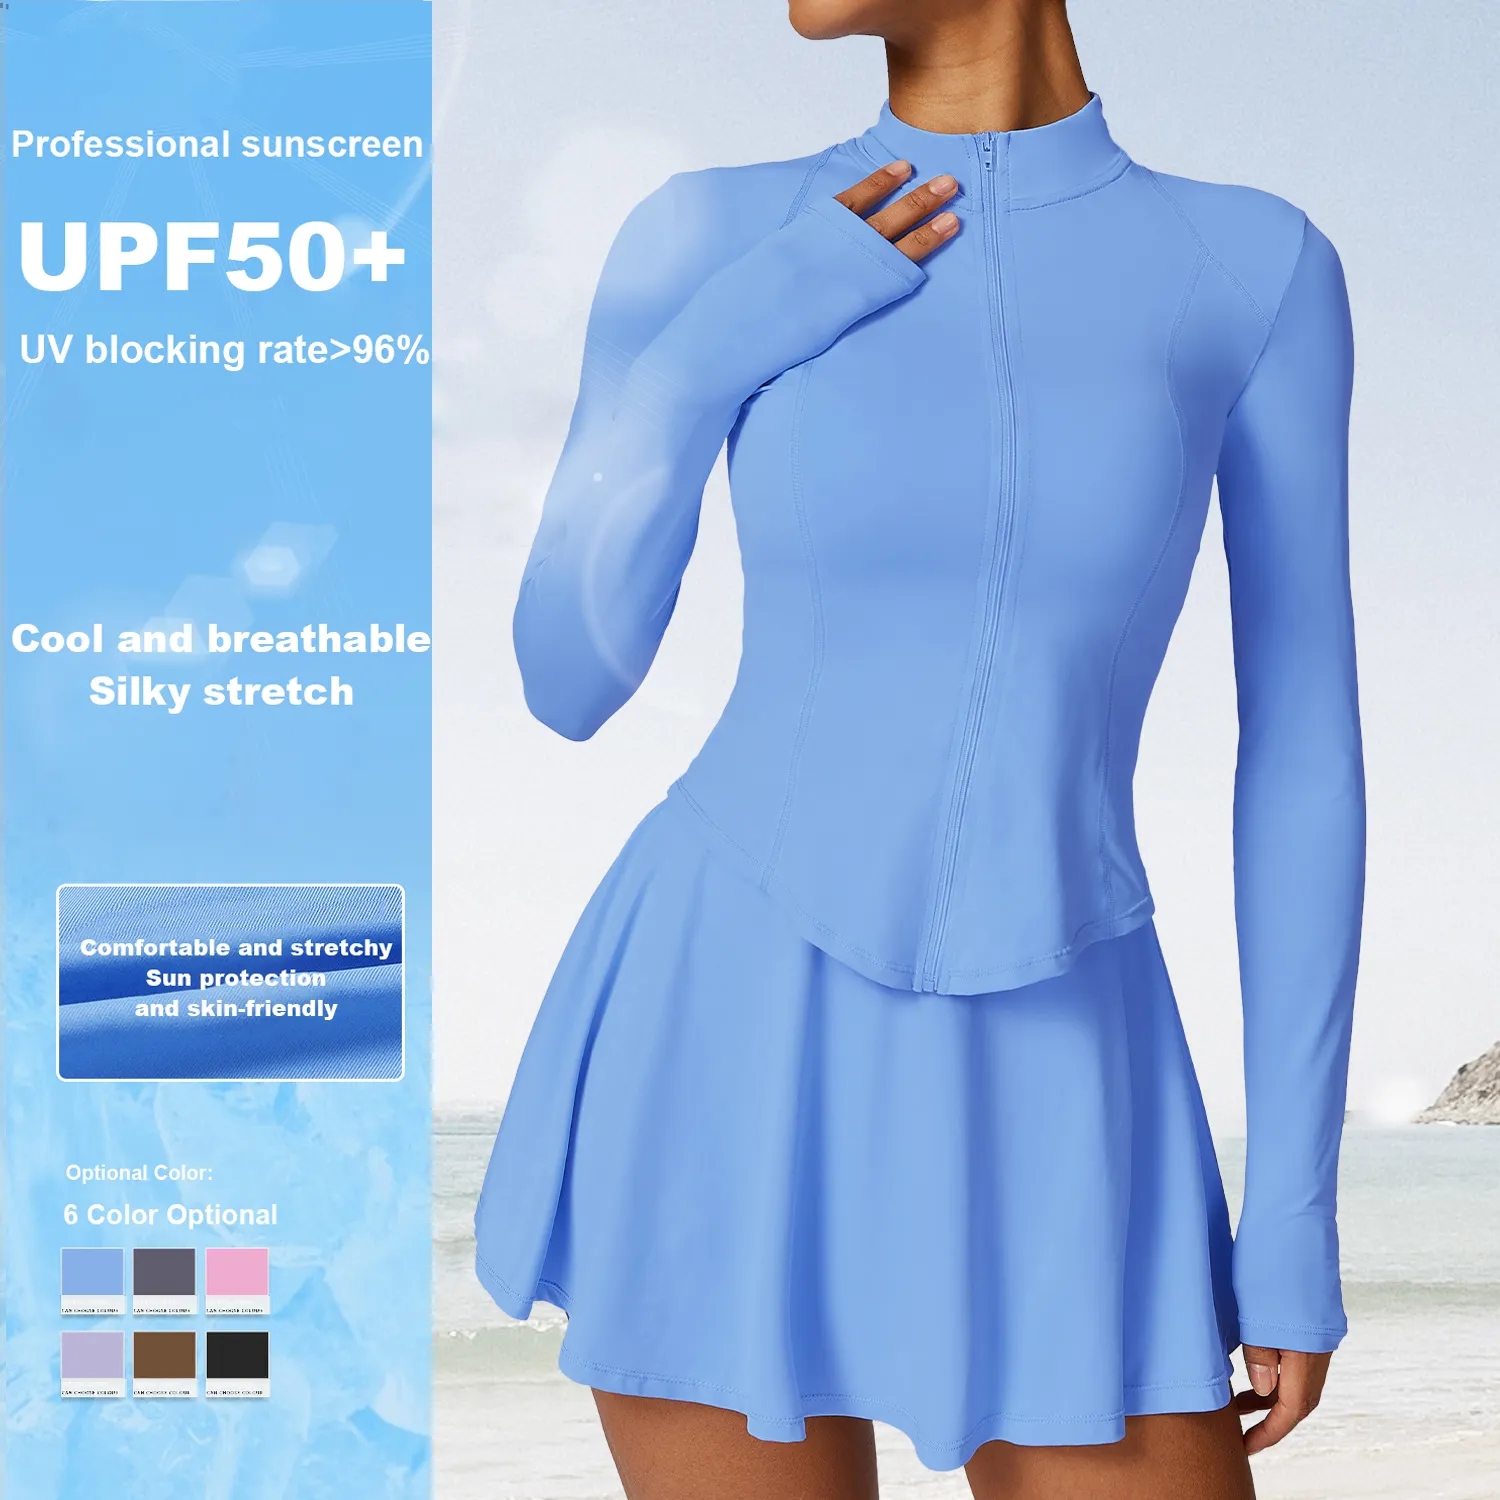 Vêtements de protection solaire pour les sports d'été Upf 50 + Top de protection anti-UV à manches longues Veste de protection solaire respirante pour femmes